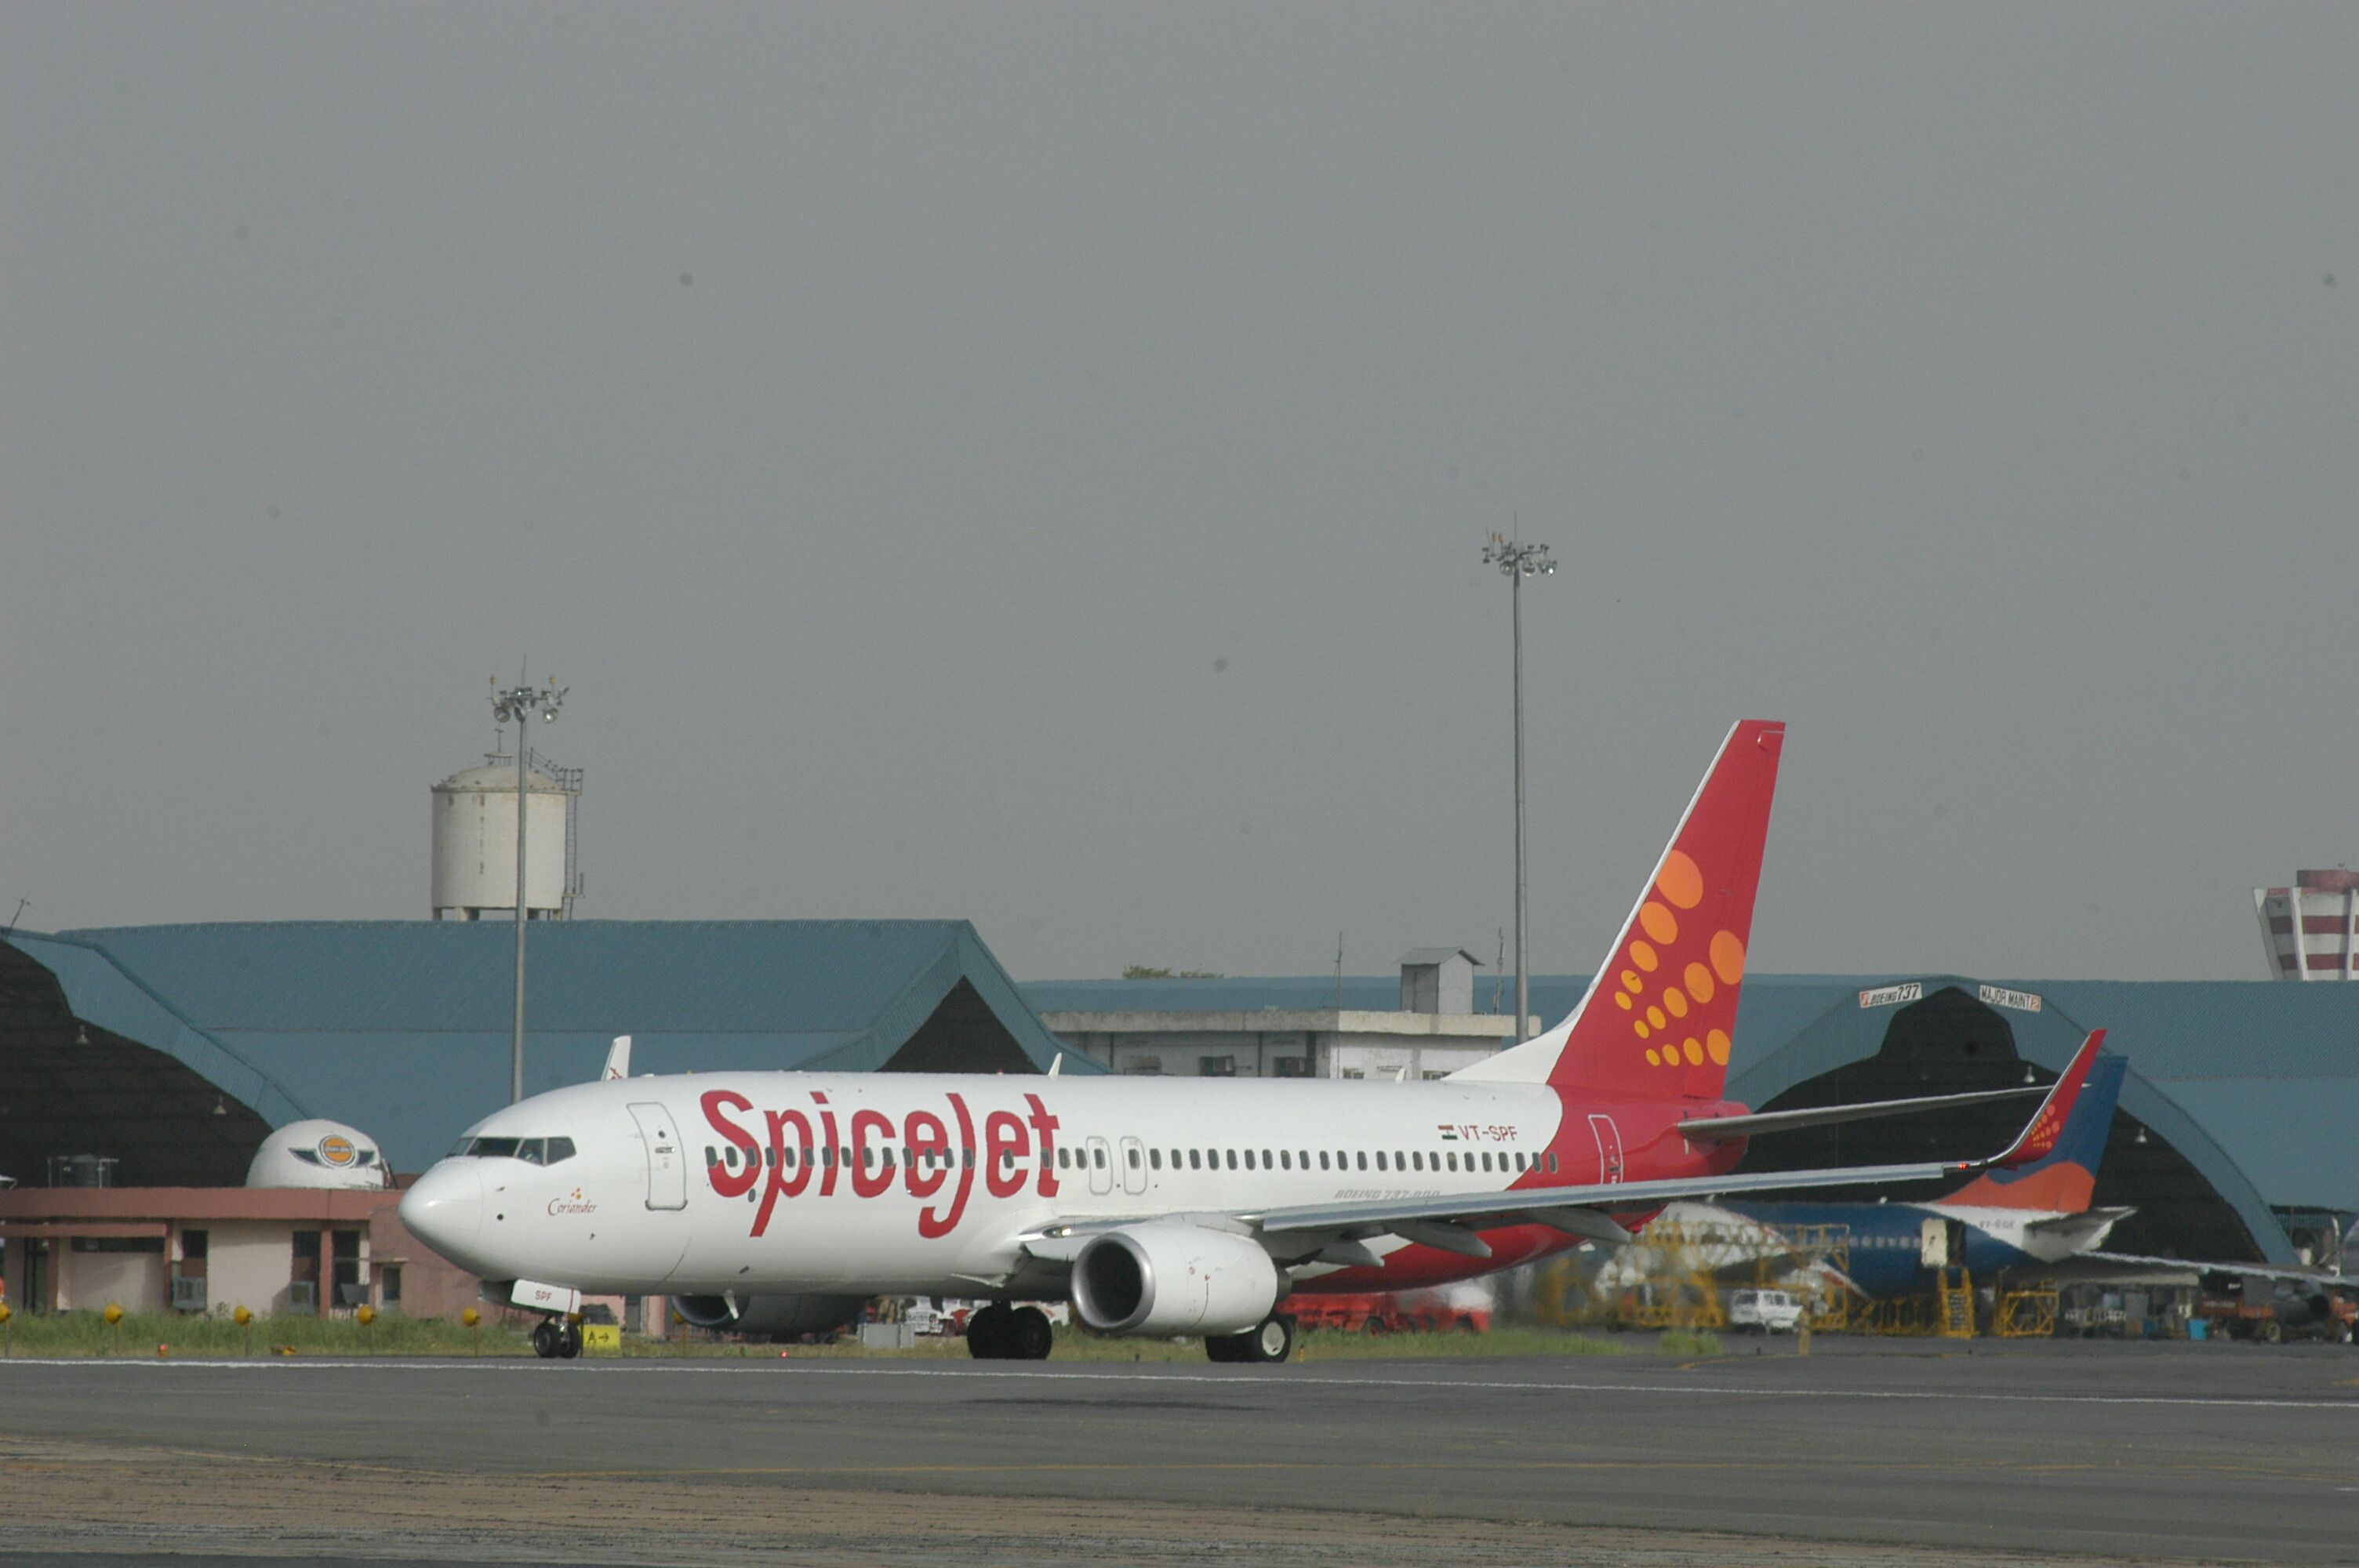 SpiceJet aircraft at Delhi Airport.